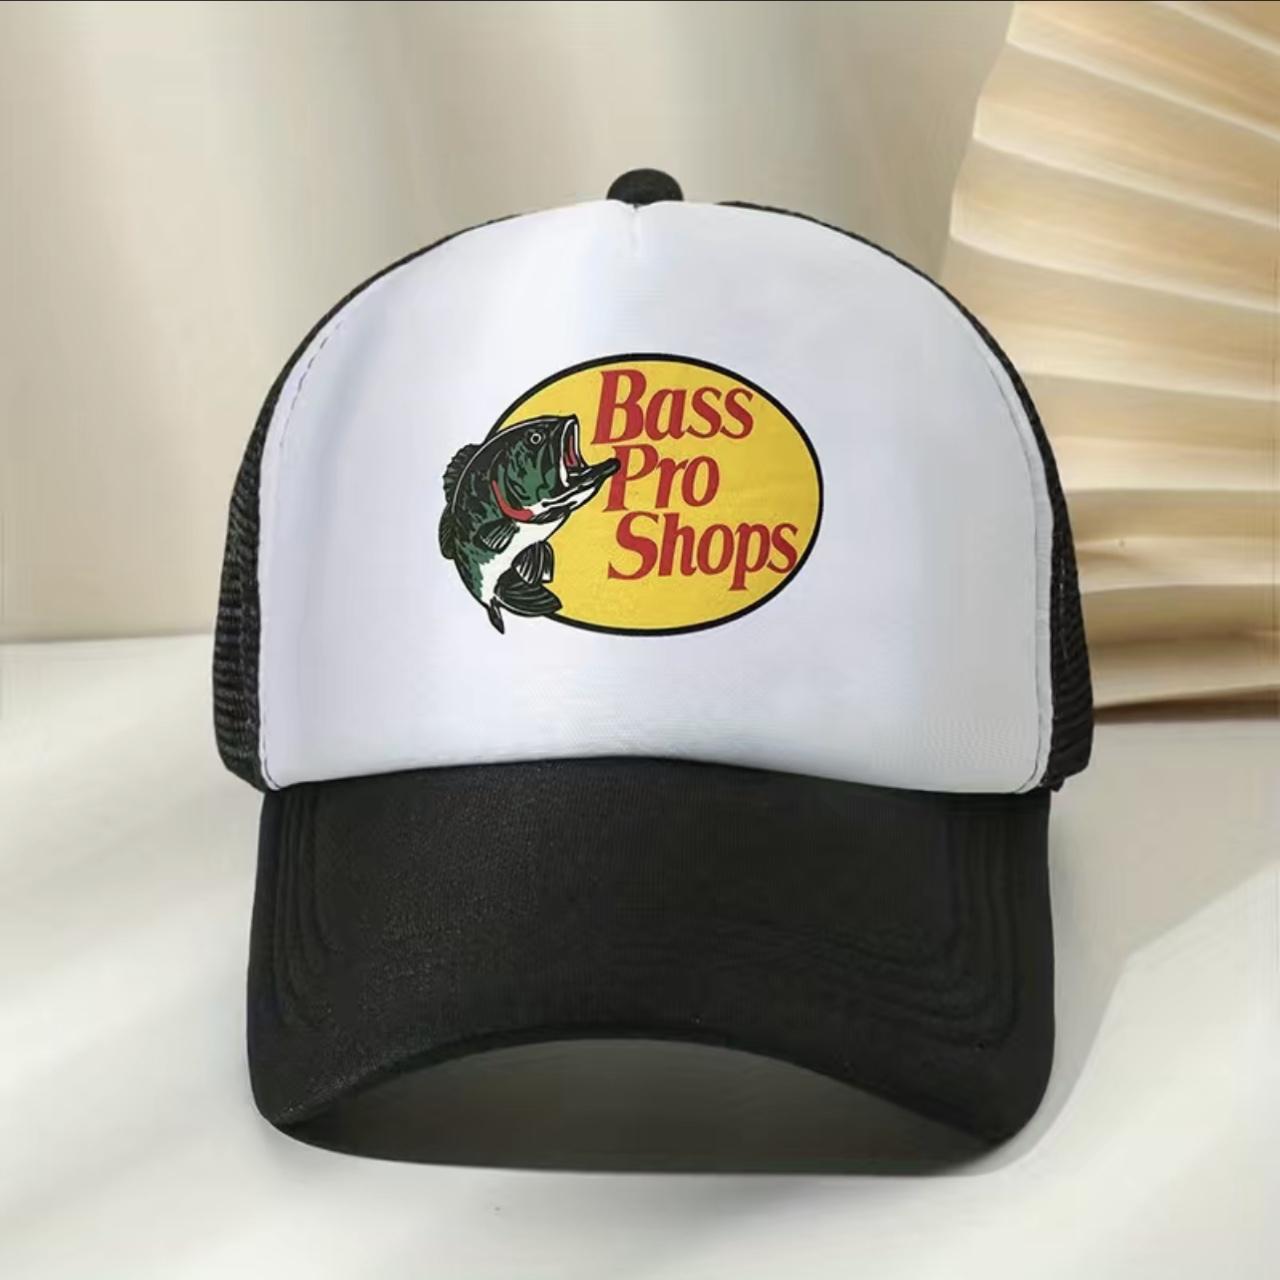 Bass Pro Shop Bucket hats - Depop